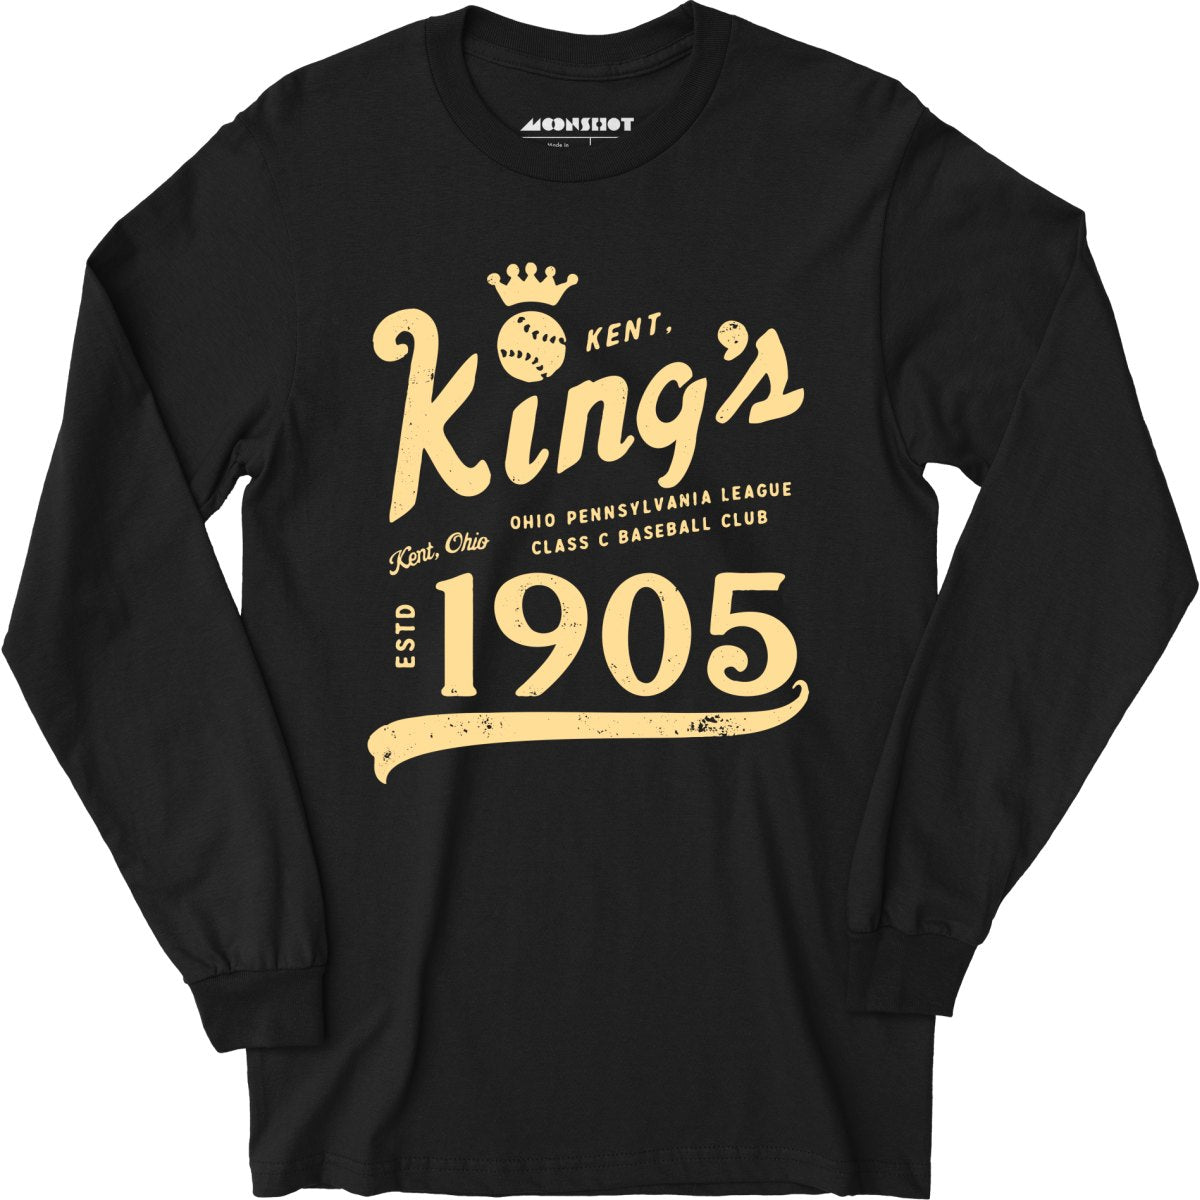 Kent Kings - Ohio - Vintage Defunct Baseball Teams - Long Sleeve T-Shirt